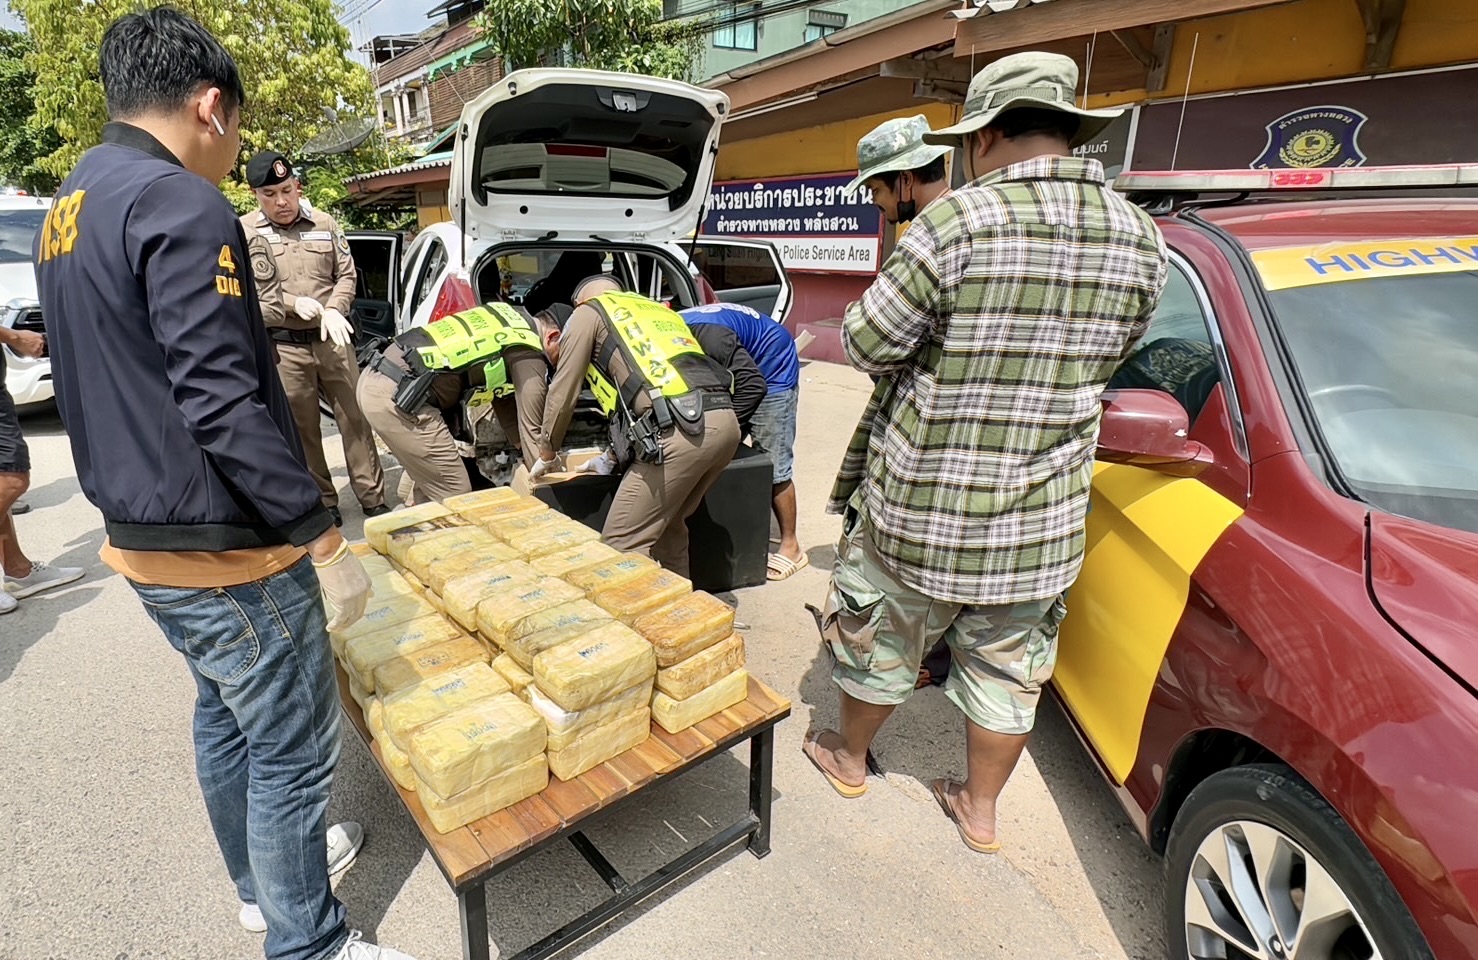 trafic de drogue Thailande